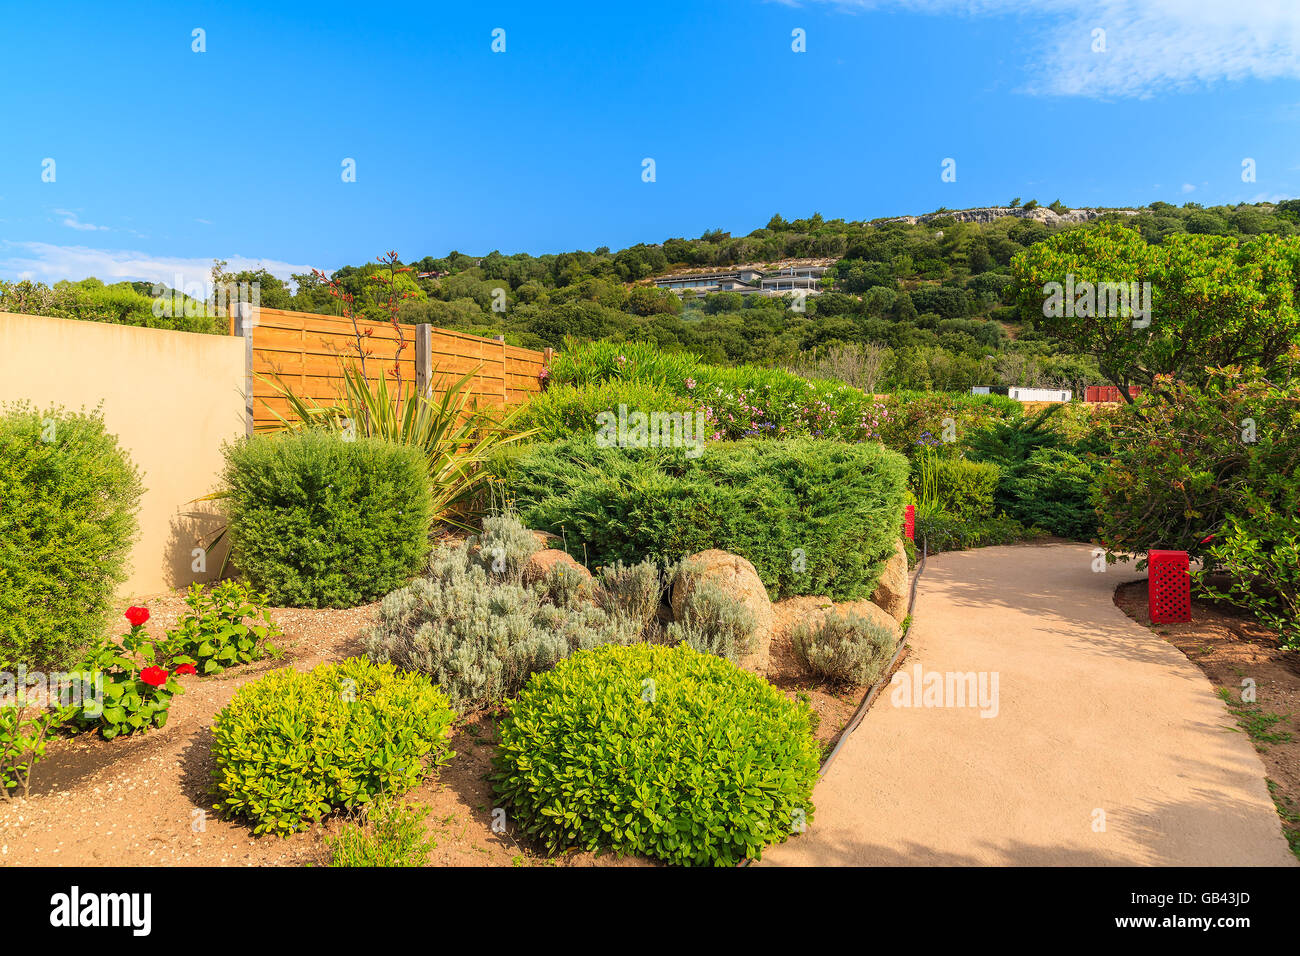 Gasse in einem grünen Park, Santa Manza Dorf, Korsika, Frankreich Stockfoto